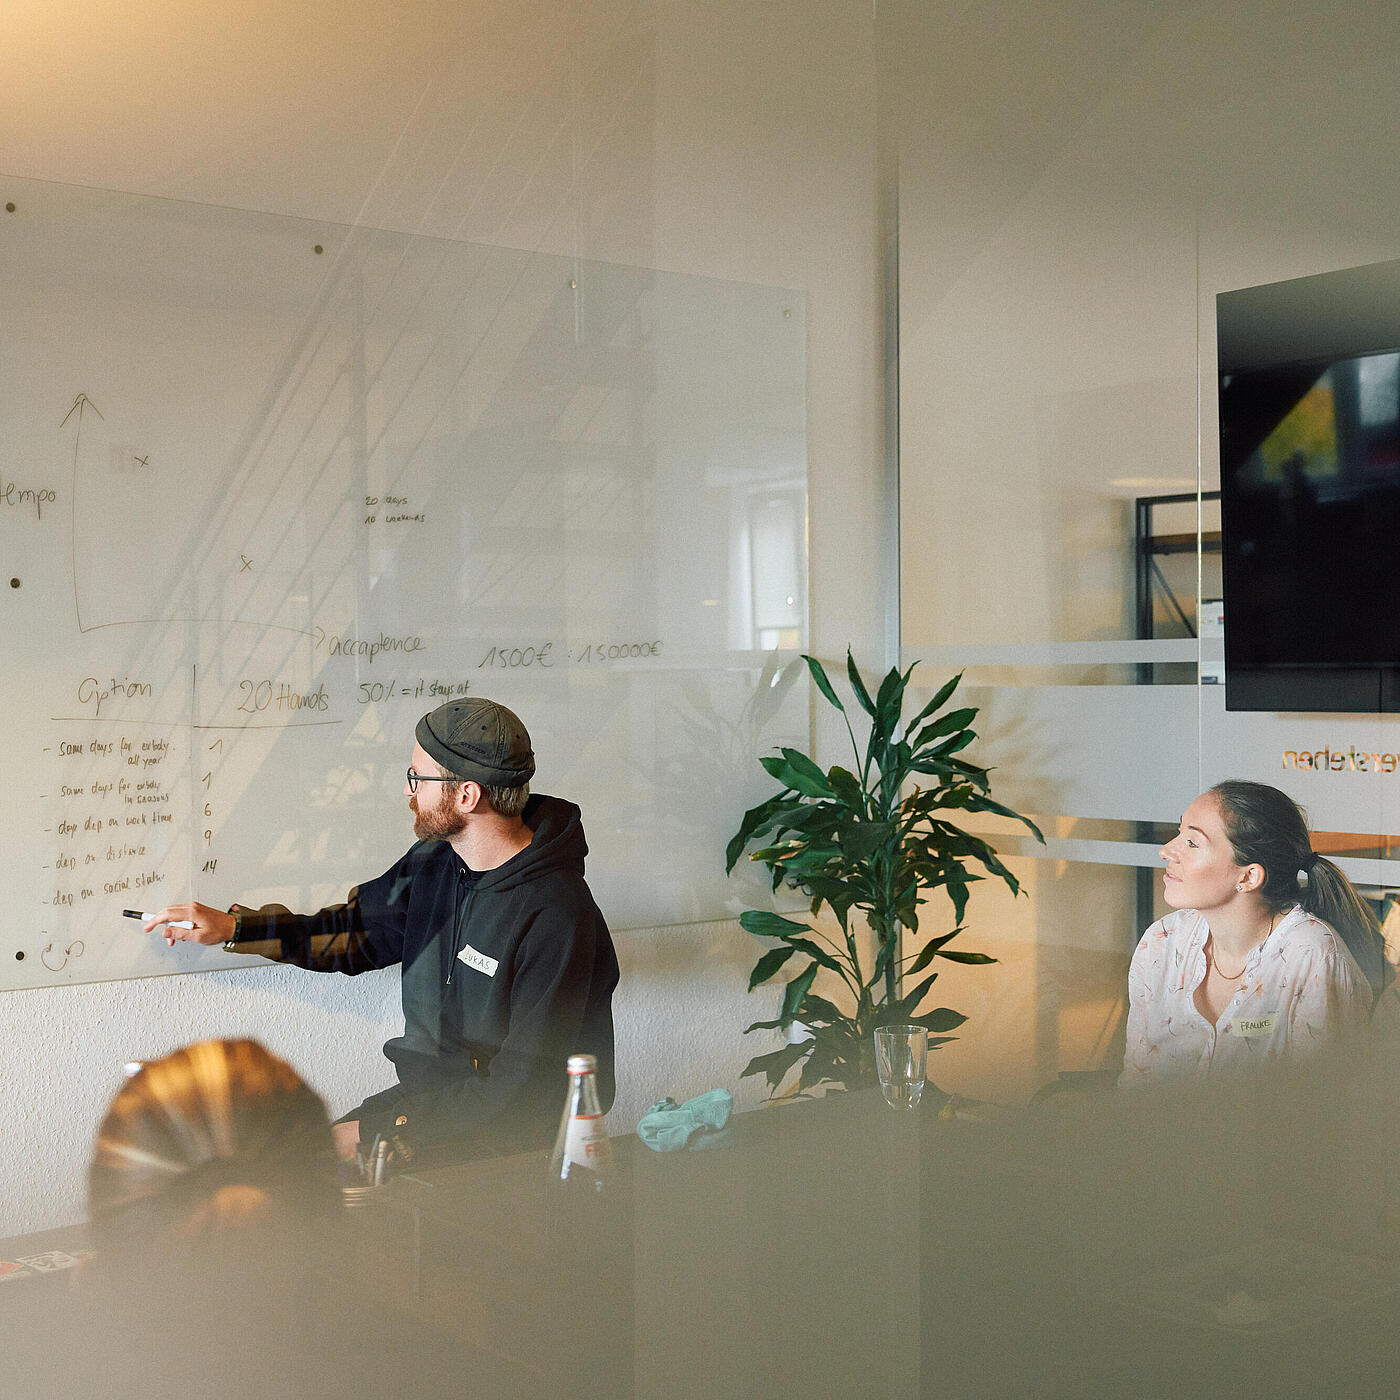 Mehrere Mitarbeitende von visuellverstehen sind in einer Besprechung. Ein Mitarbeiter visualisiert etwas an einem Whiteboard.